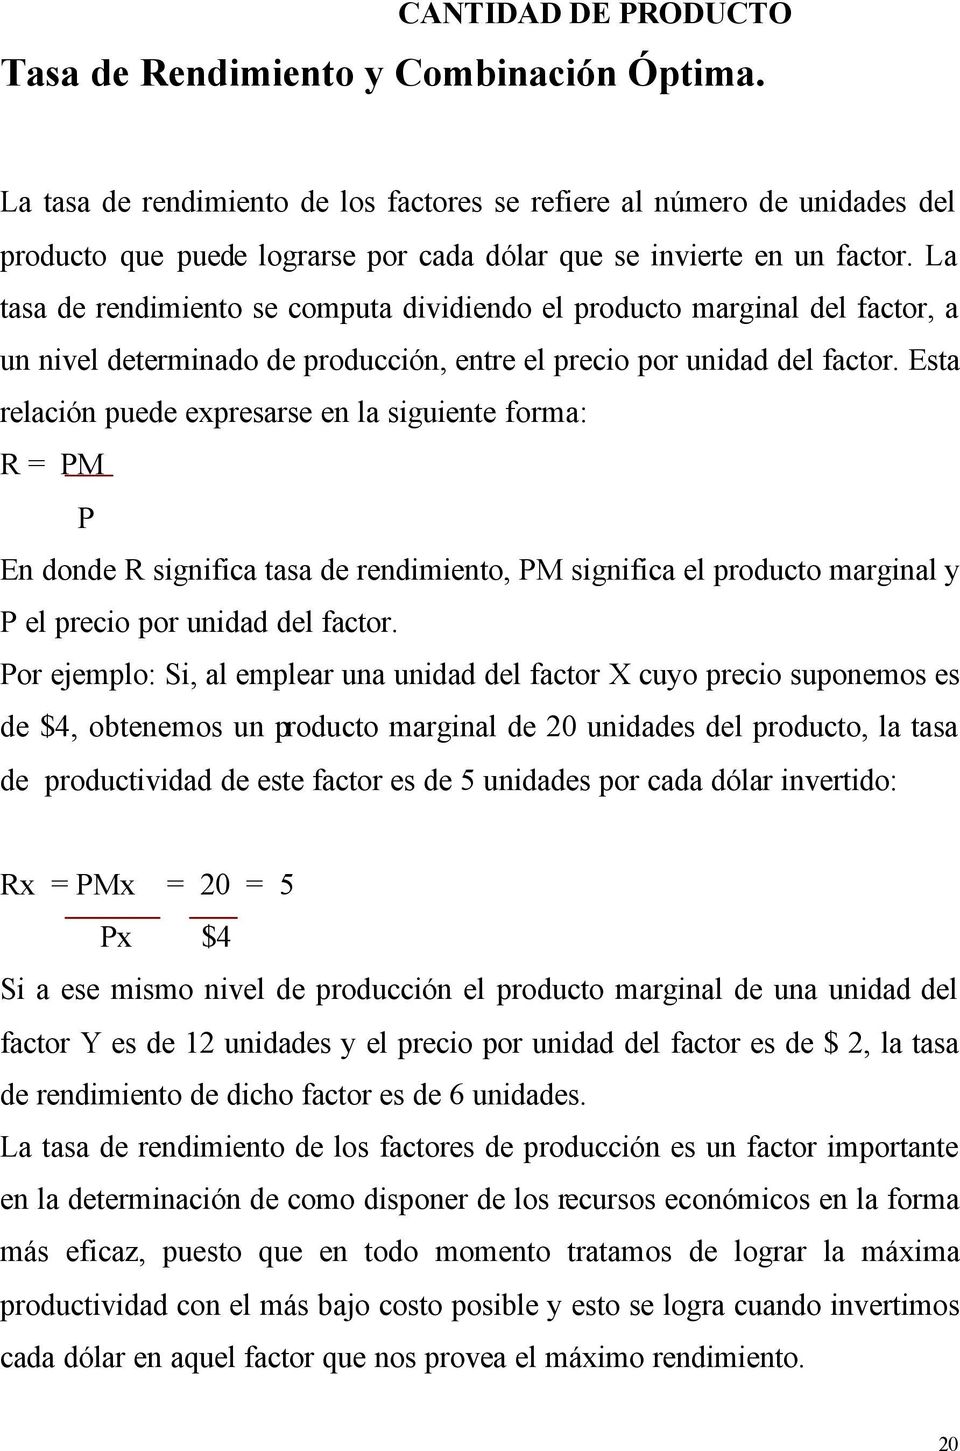 La tasa de rendimiento se computa dividiendo el producto marginal del factor, a un nivel determinado de producción, entre el precio por unidad del factor.